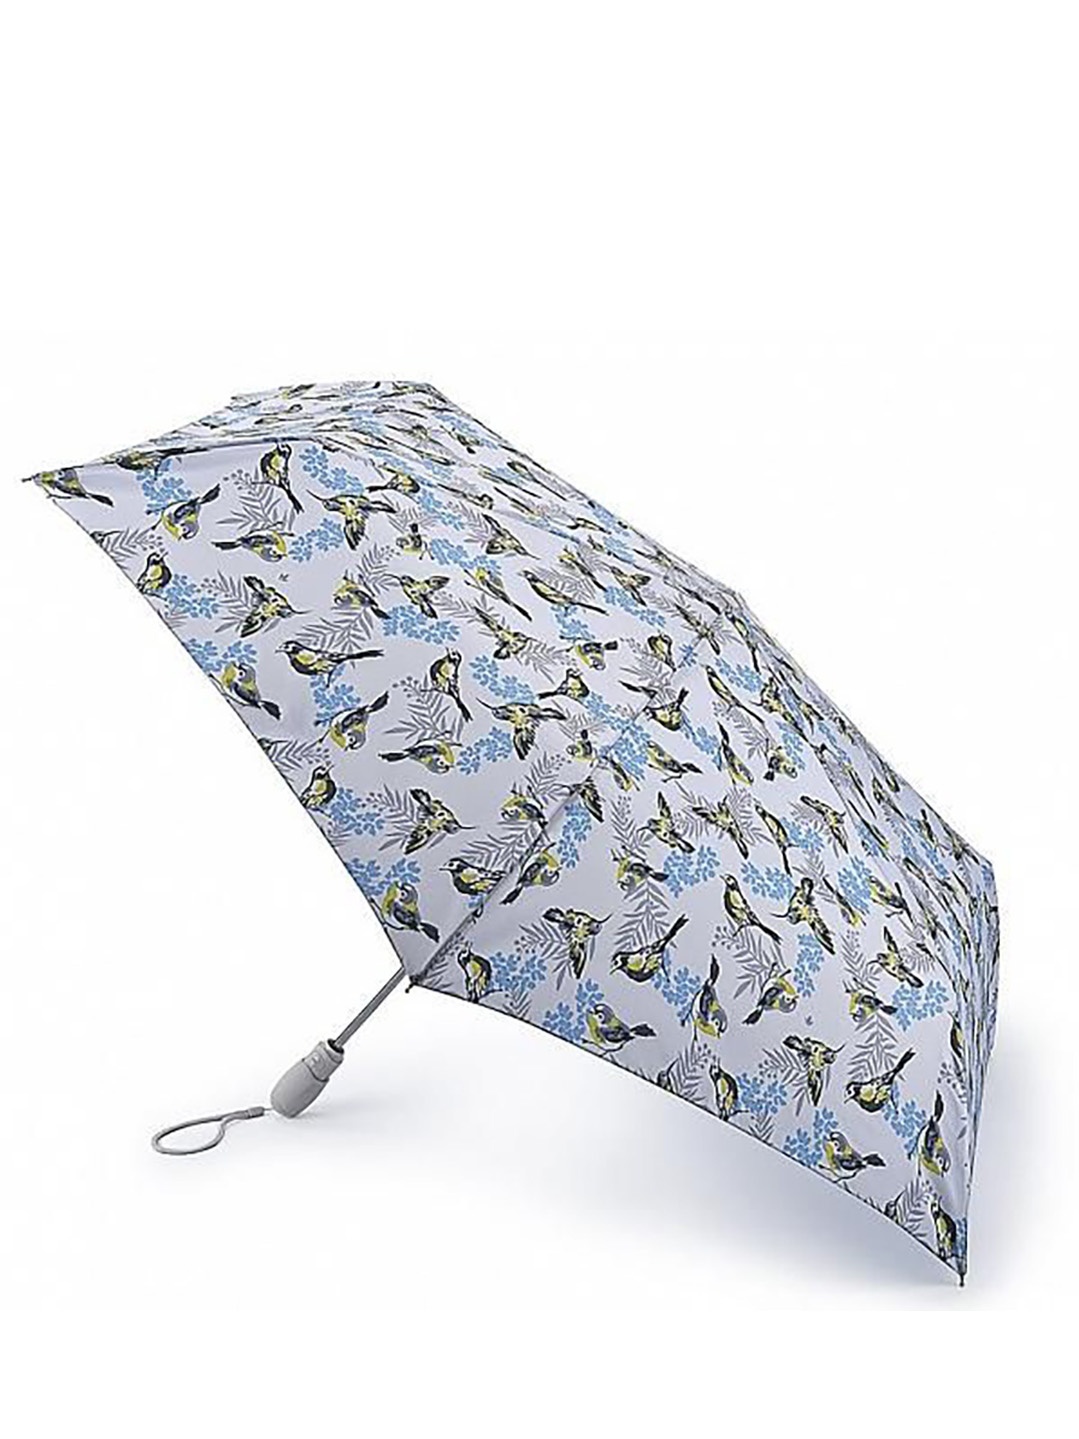 Фото Компактный женский зонт-автомат с принтом птиц 